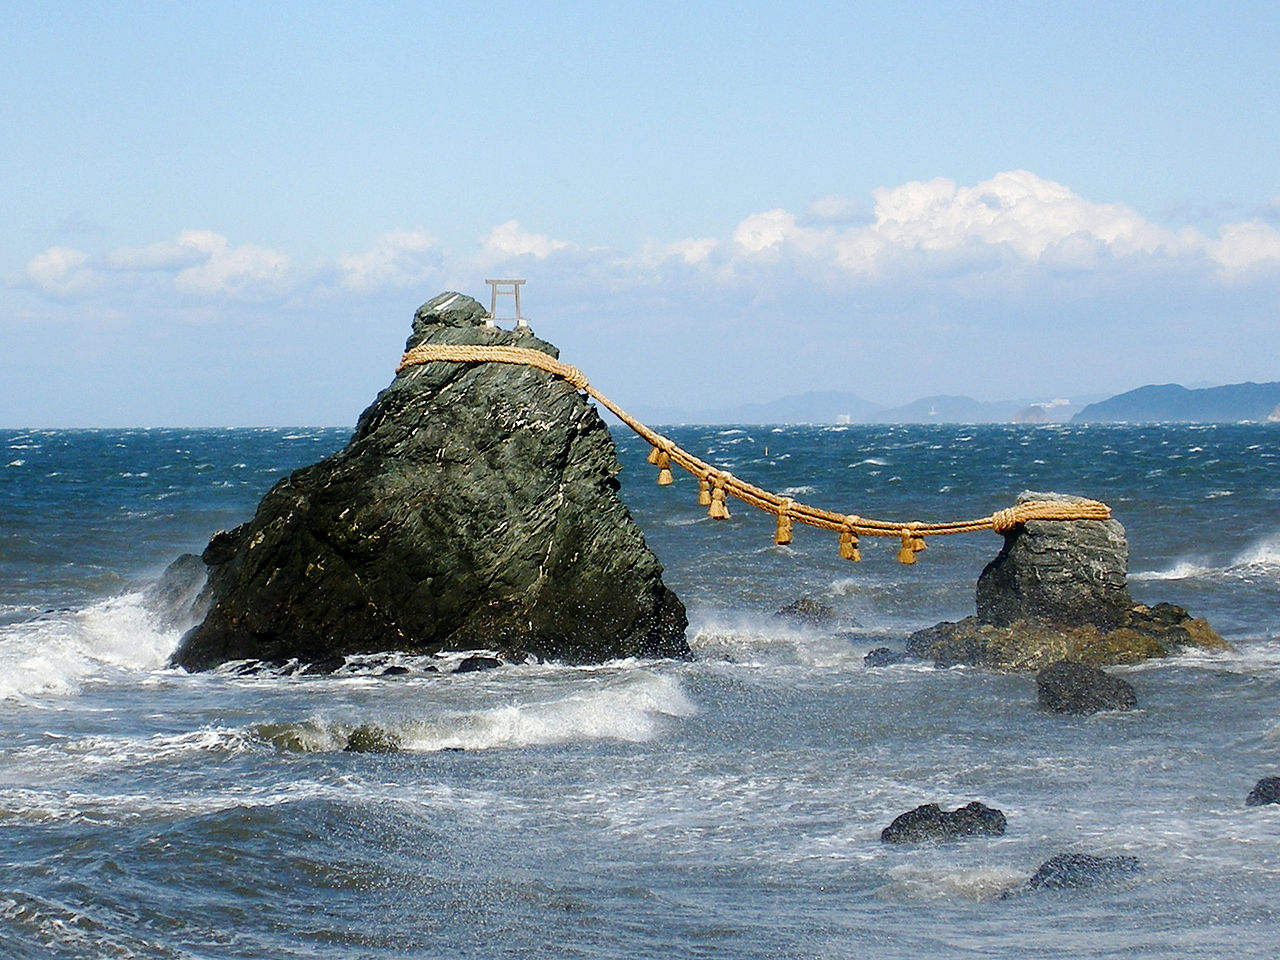 Meoto Iwa (夫婦 岩), vagy hazaspar sziklak Futamiban.<br />Futami varosaban ket sziklat is ossze kotottek es szentnek tekintenek a Futami Okitama kegyhely hivoi. Szerintuk a sziklak hirdetik Izanagi es Izanami Istensegek egyesuleset, ugyanakkor a ferfi es no hazassagat is dicsoitik.<br />